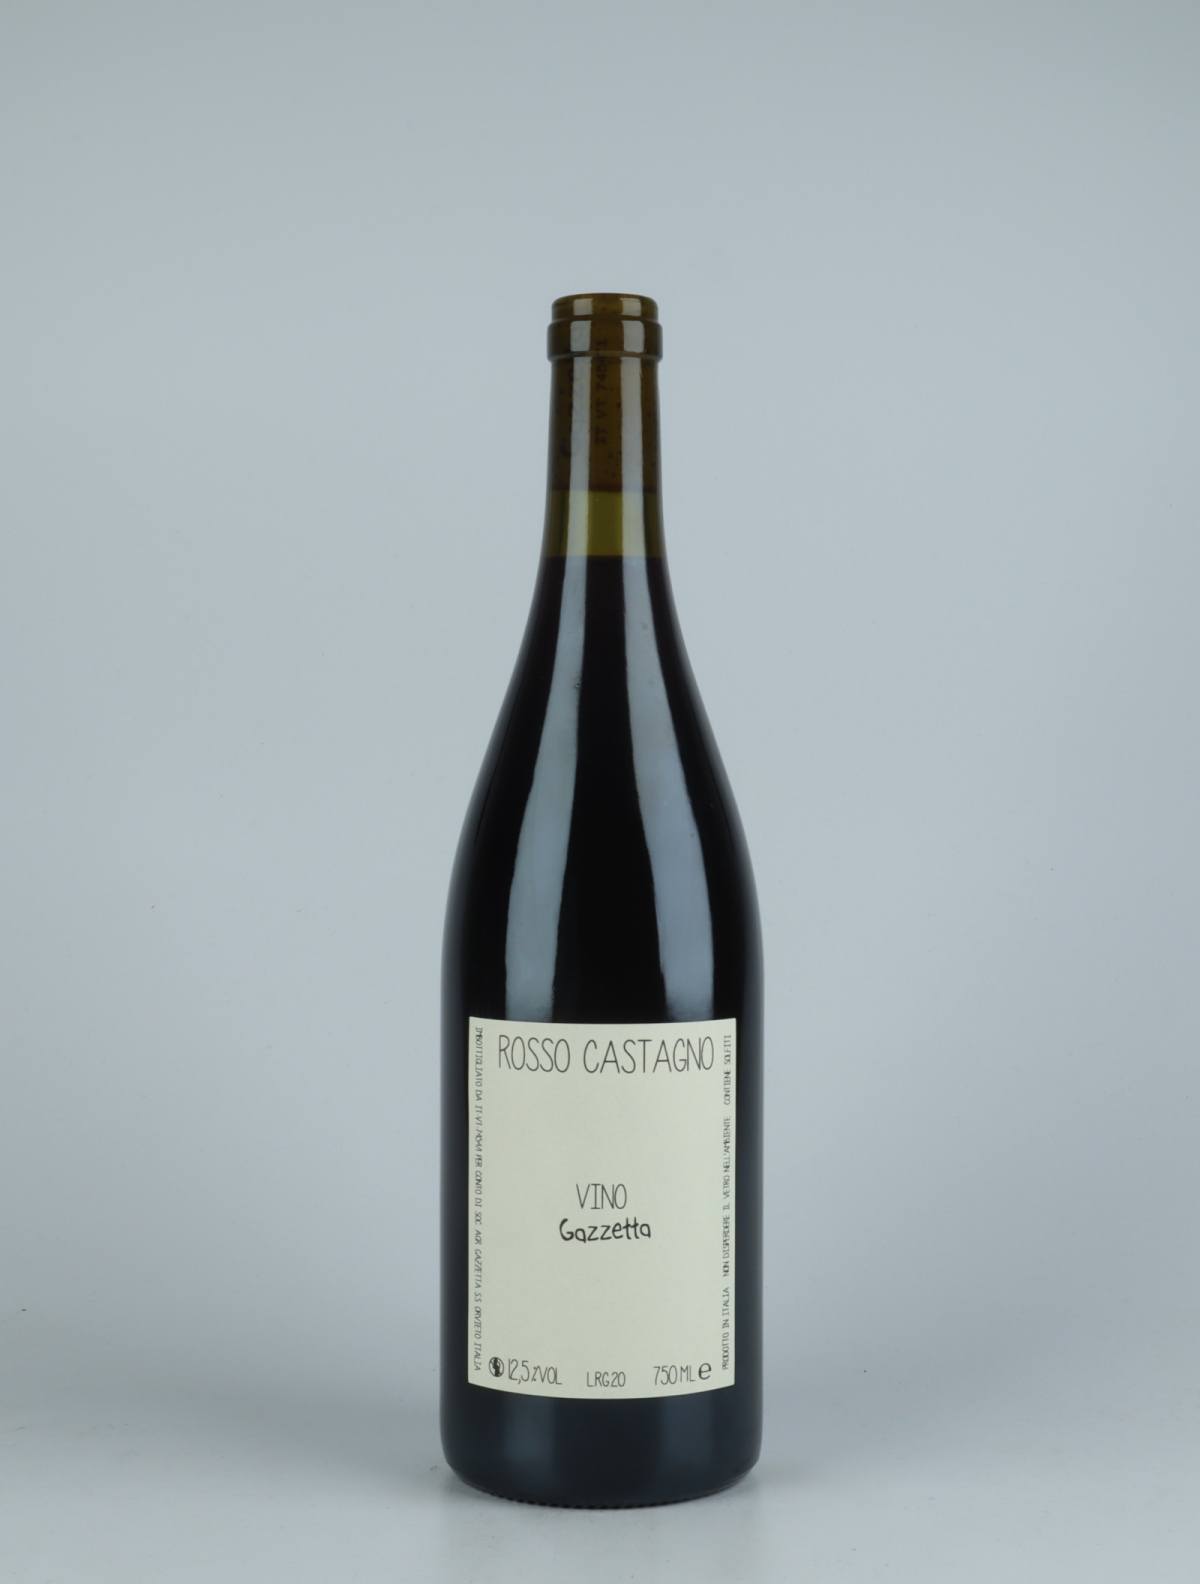 A bottle 2020 Vino Rosso Castagno Red wine from Gazzetta, Lazio in Italy